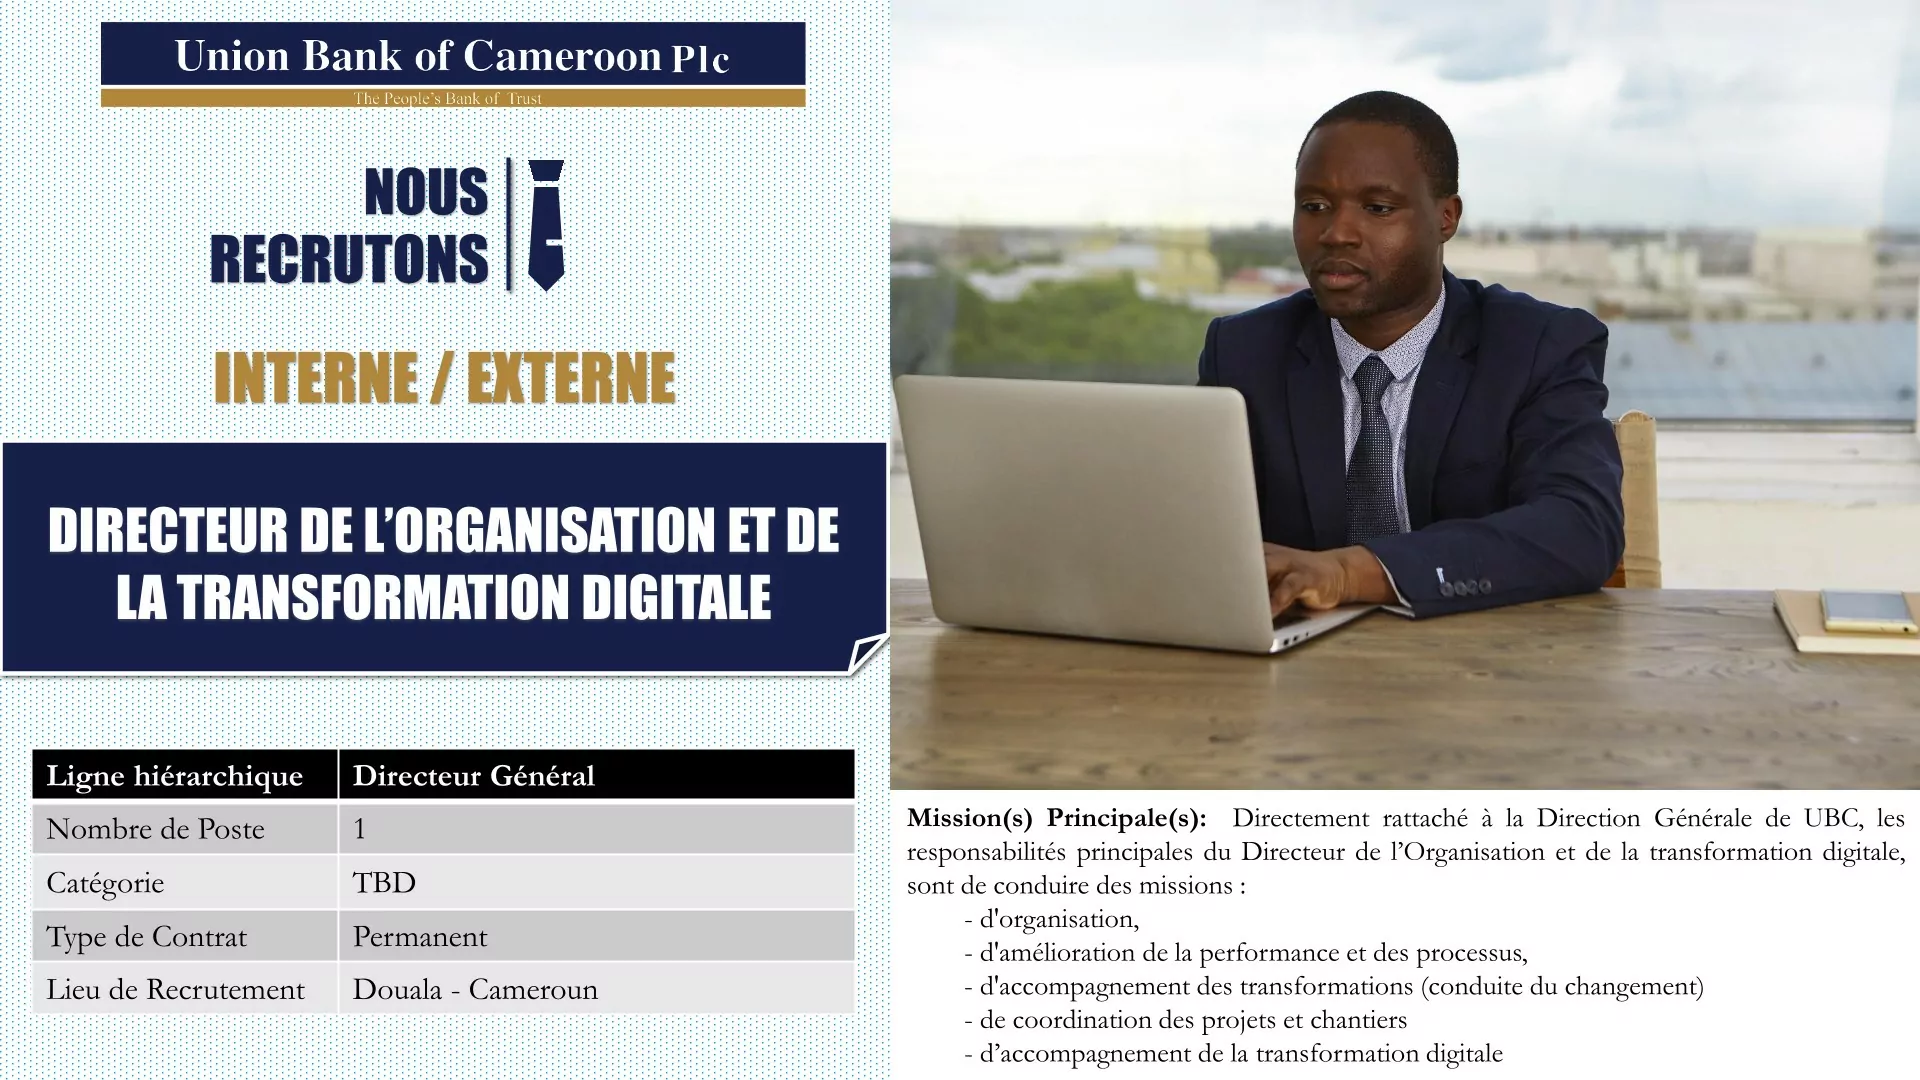  Union Bank of Cameroun Plc recrute un Directeur de l’organisation et de la transformation digitale